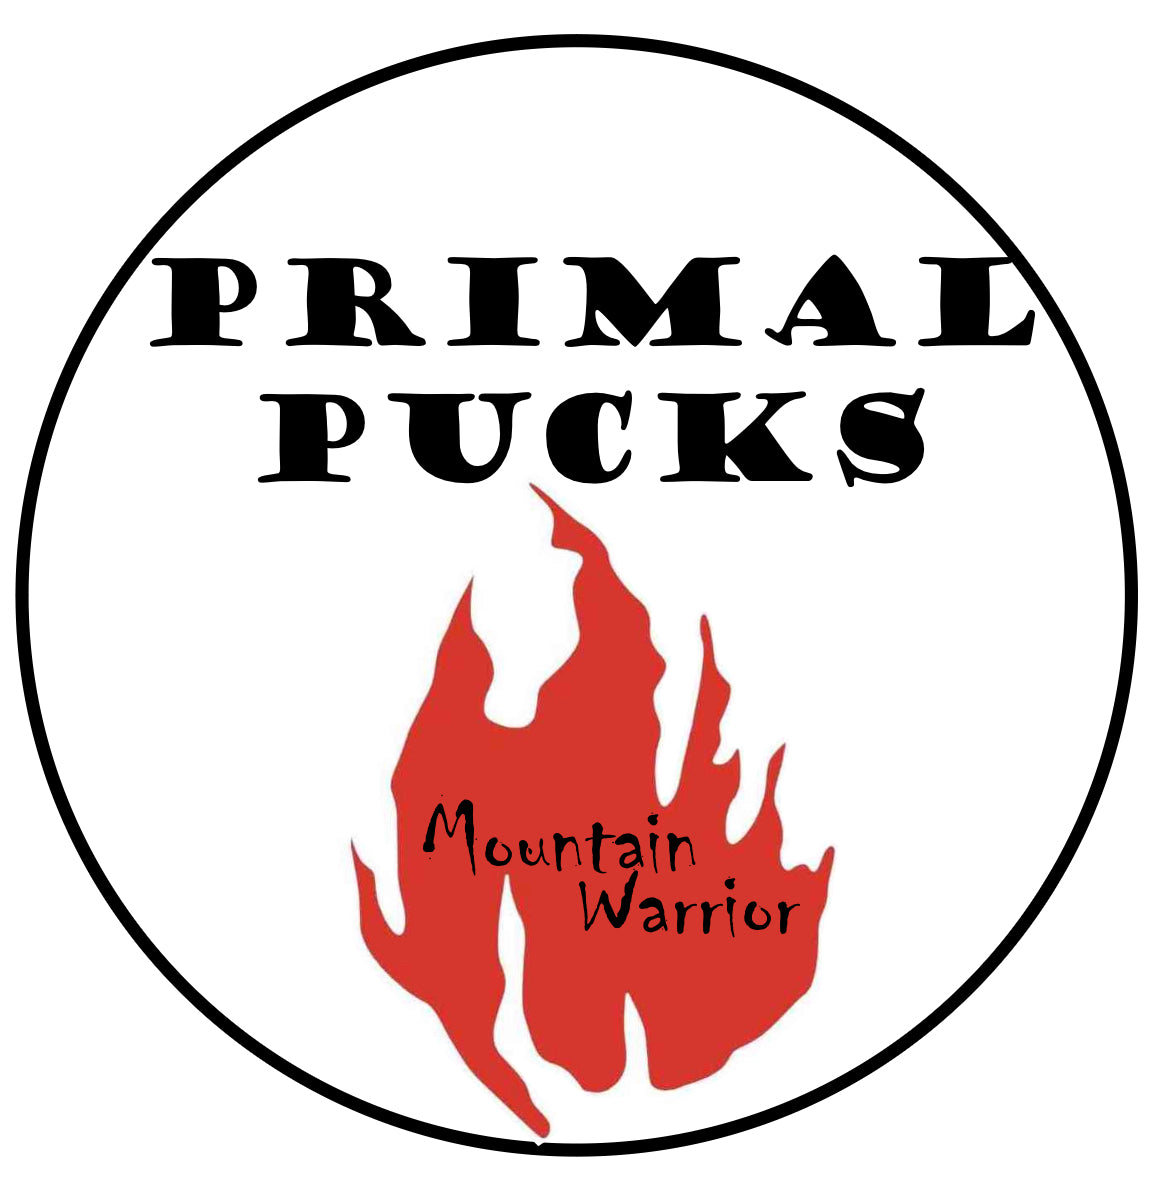 Mountain Warrior Primal Pucks